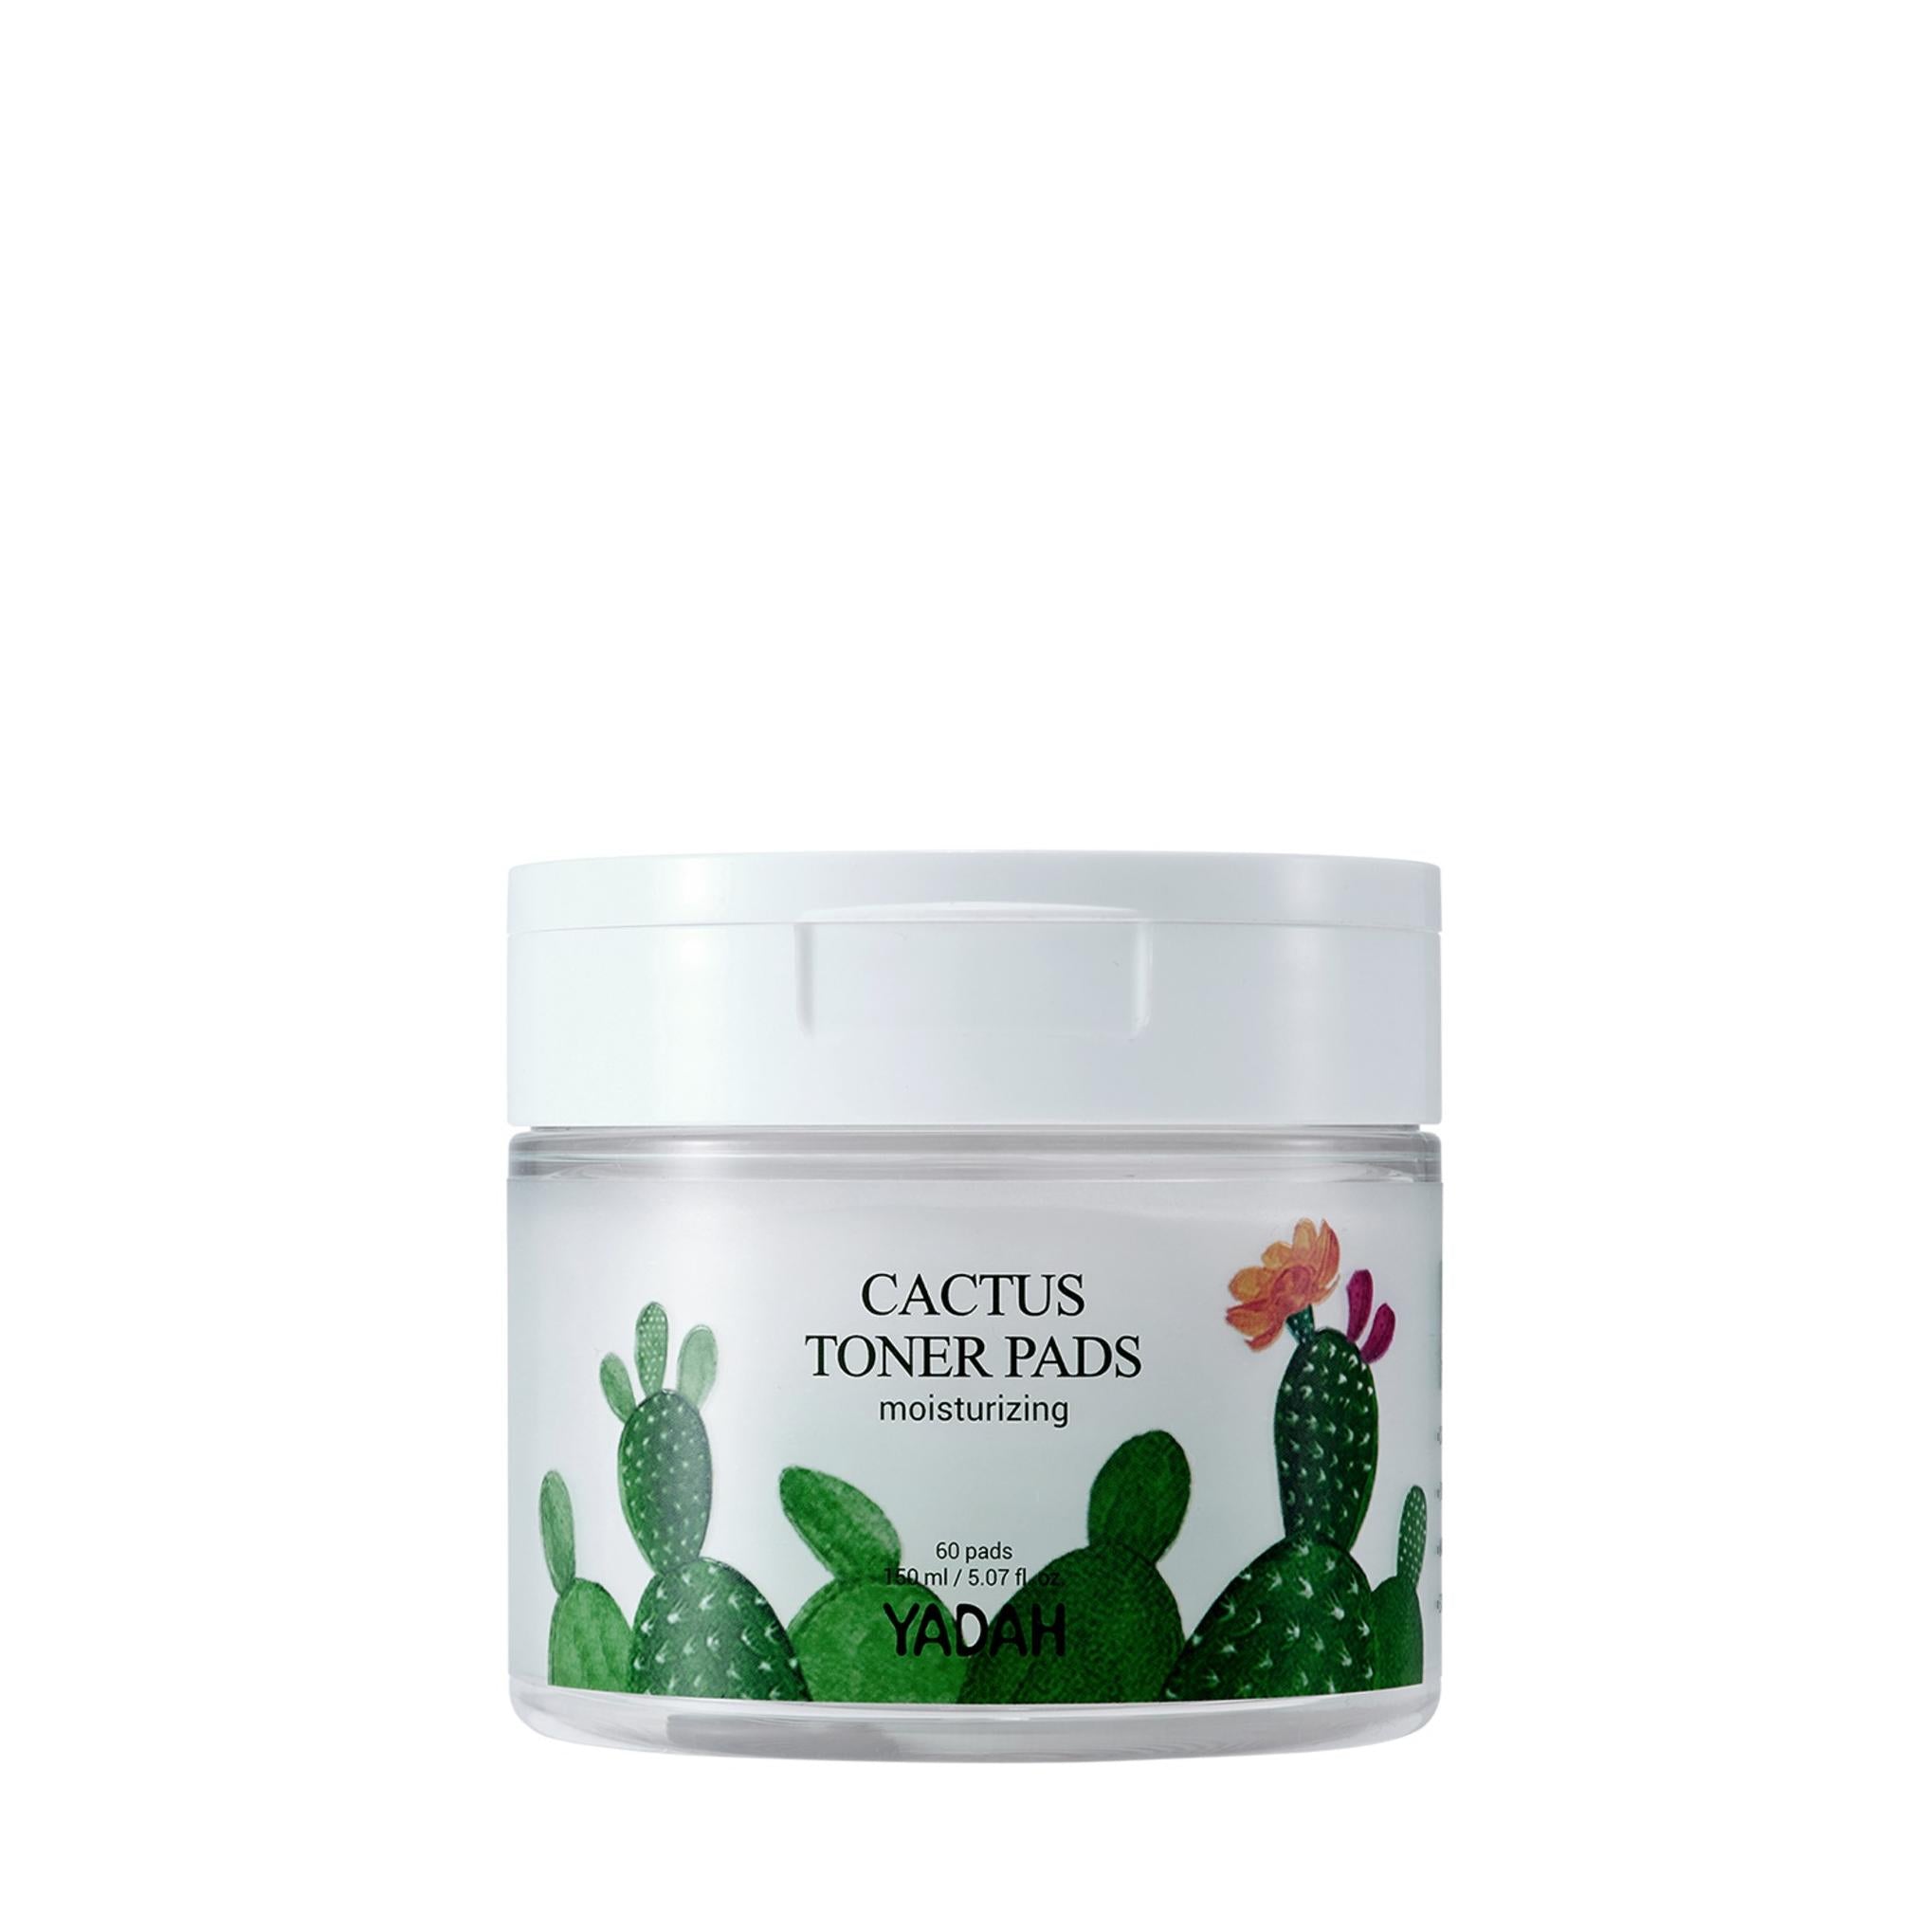 Yada Cactus Toner Pad + Moisturizing Cream Set of 2